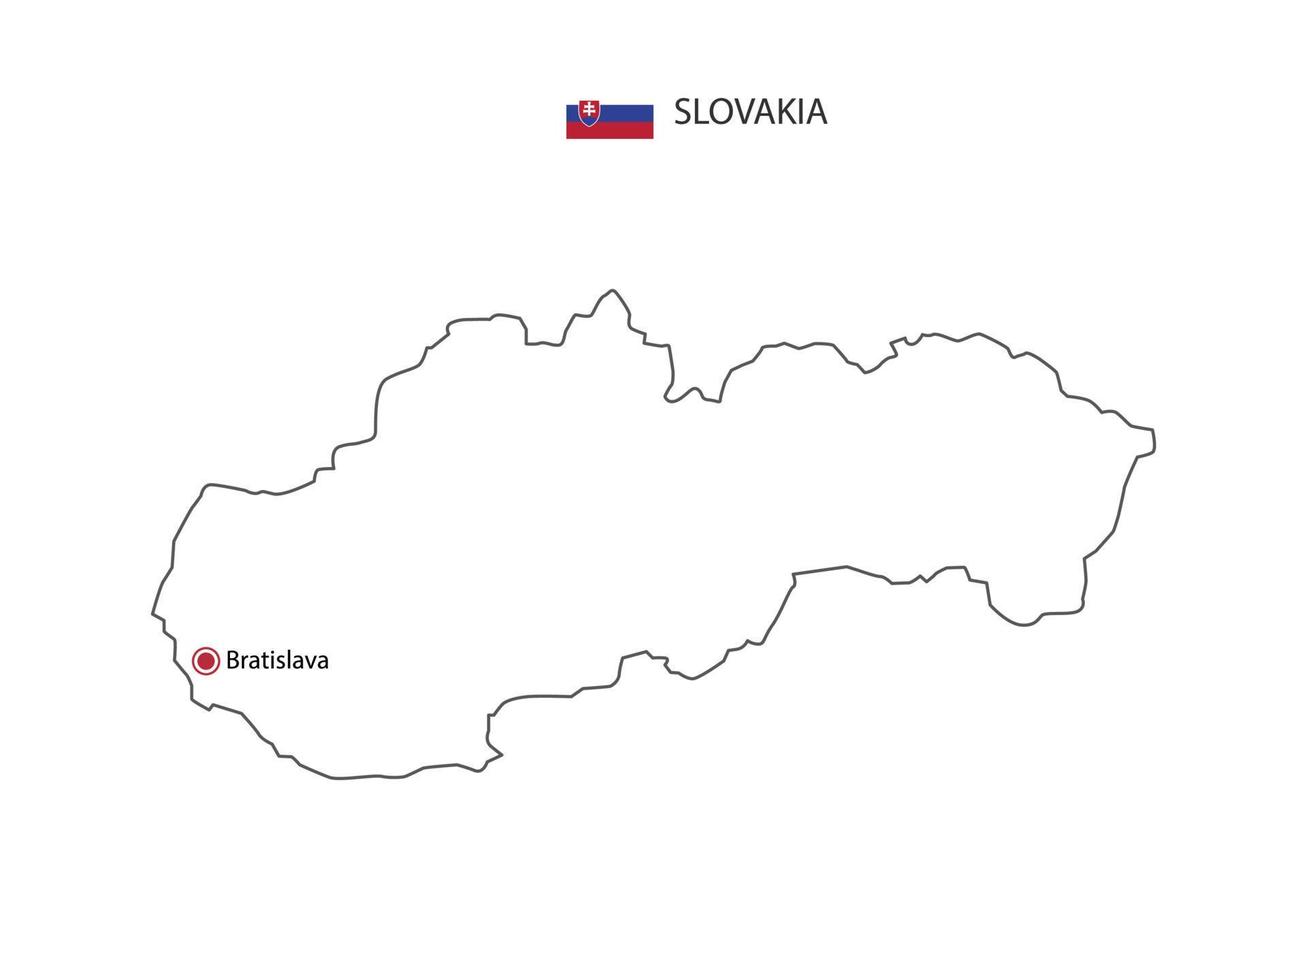 mão desenhar vetor de linha preta fina do mapa da Eslováquia com capital bratislava em fundo branco.